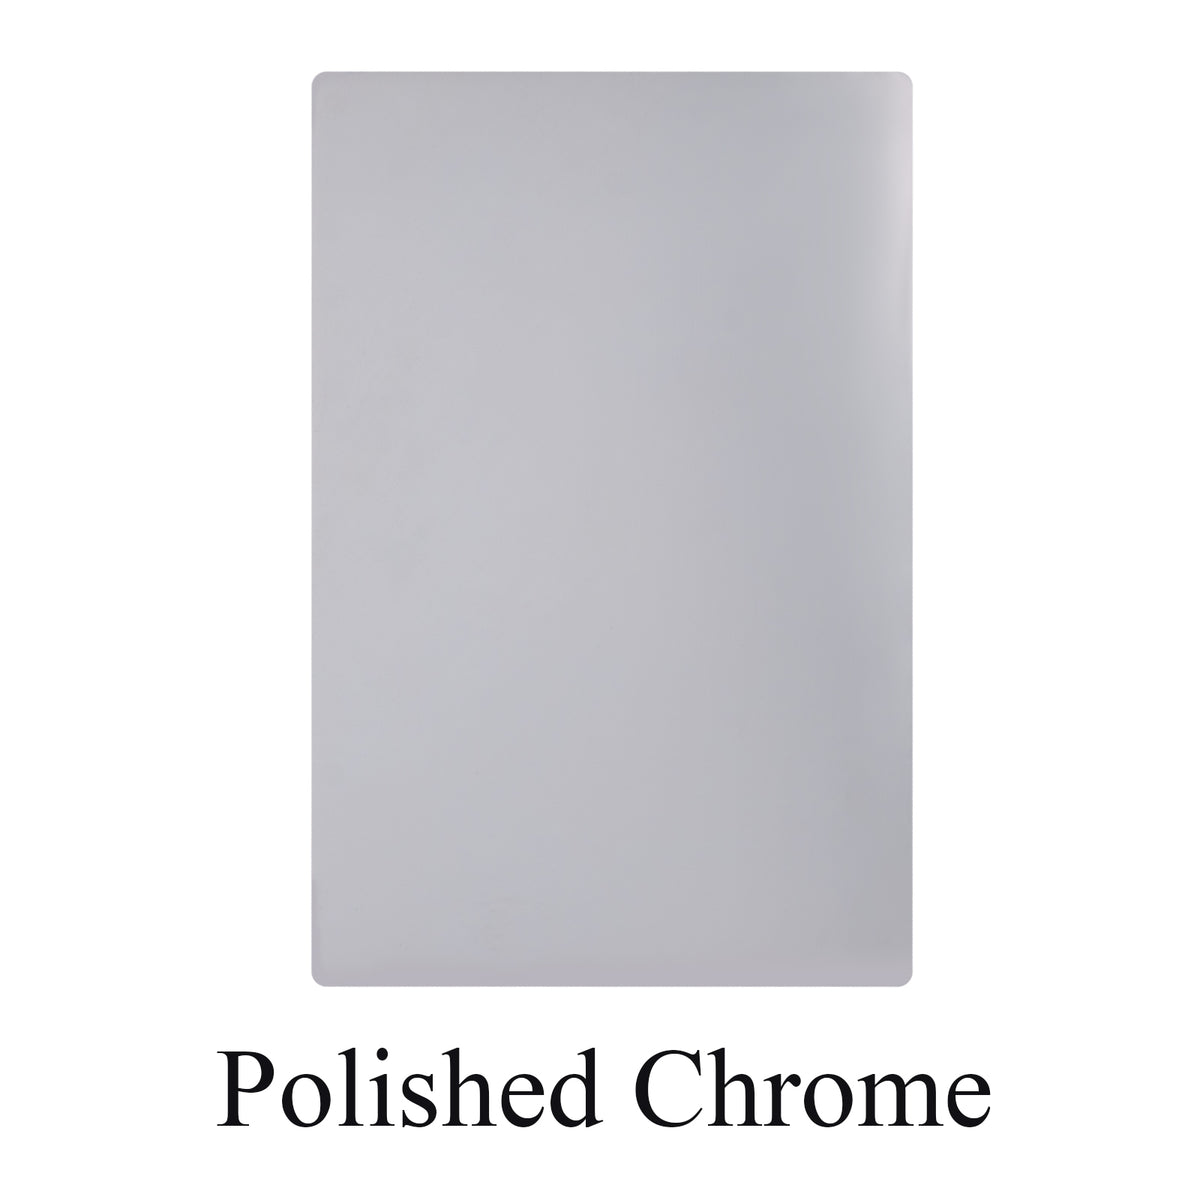 polished chrome sheet